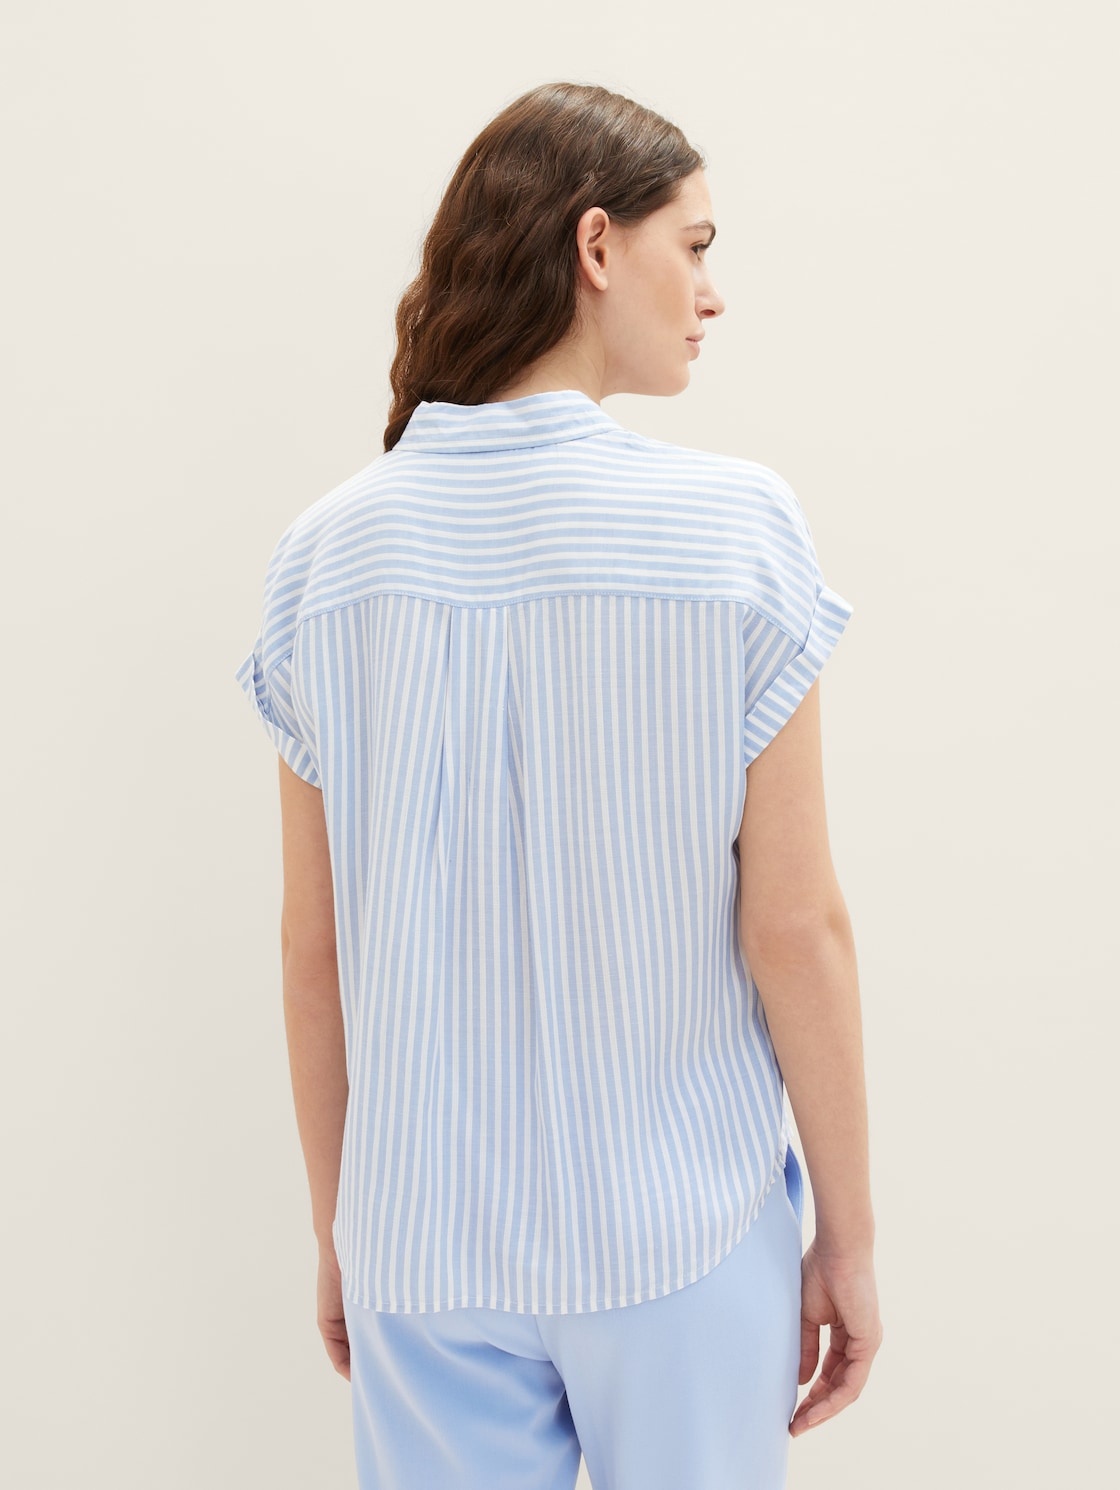 Bild von Damen Kurzarm-Bluse mit Streifen